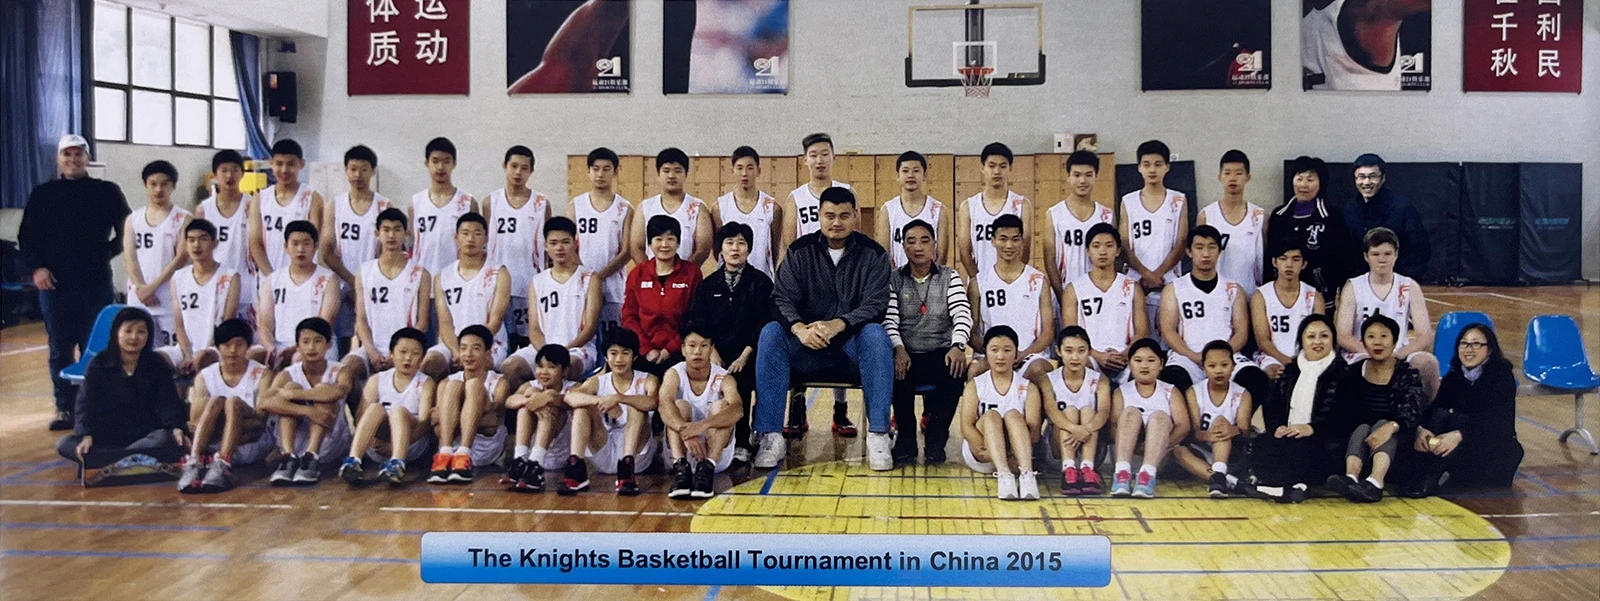 2015年Knights Basketball 中国之行与篮球巨星姚明合影